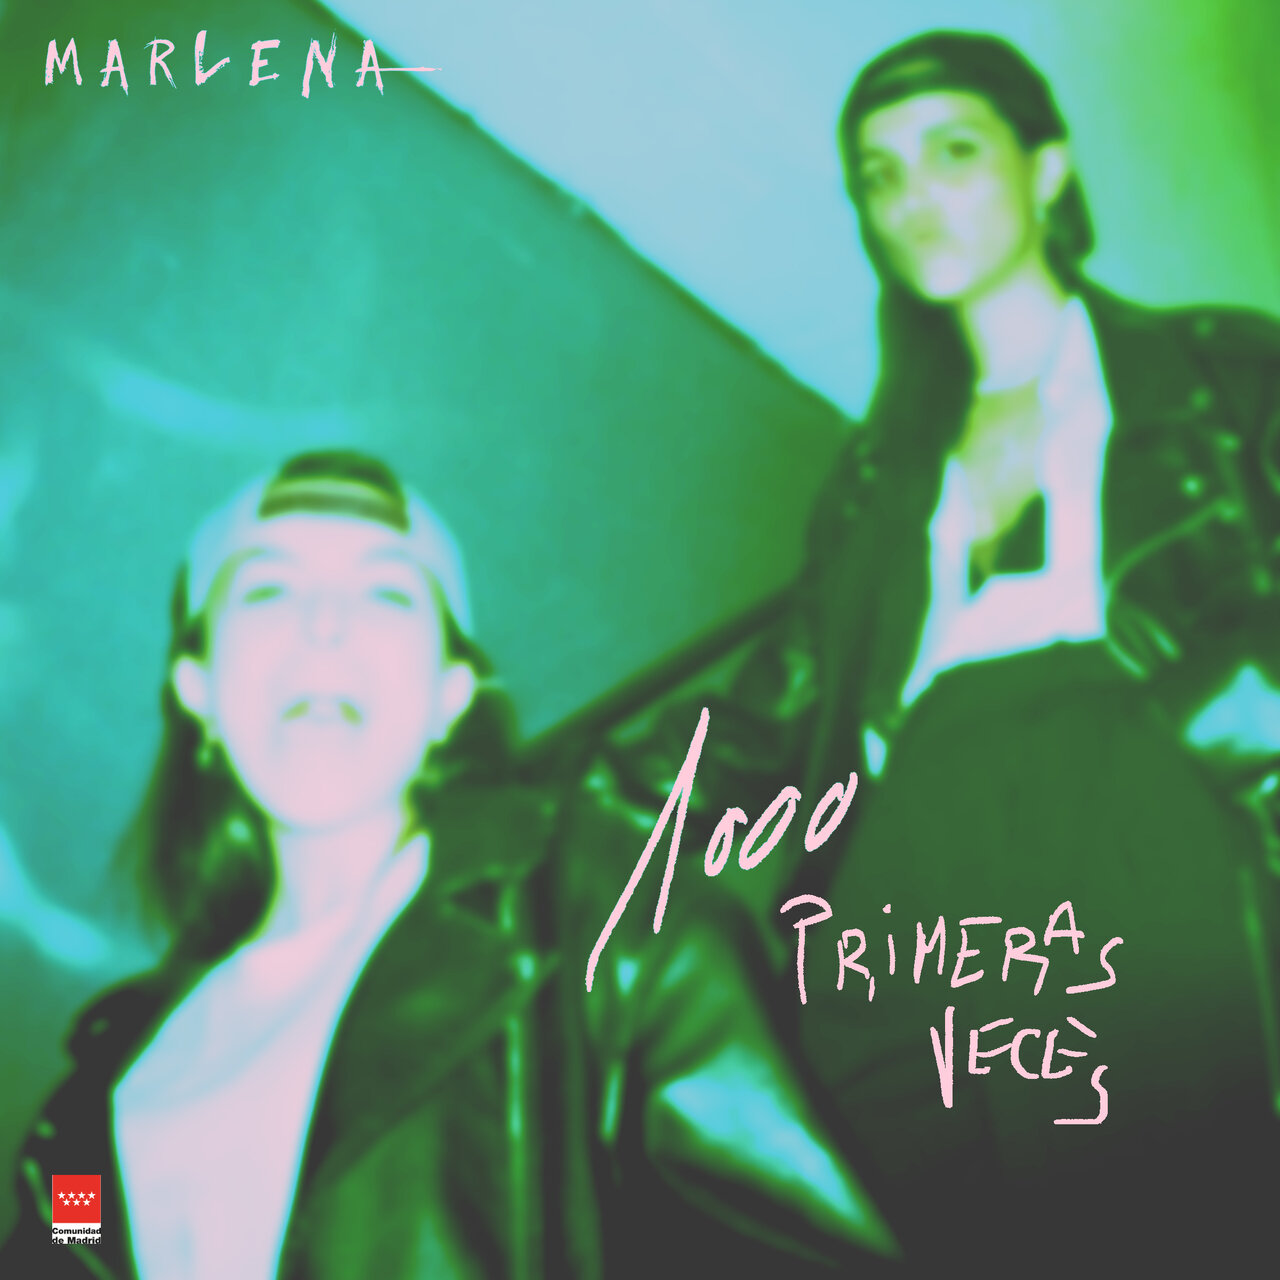 Marlena 1000 Primeras Veces cover artwork